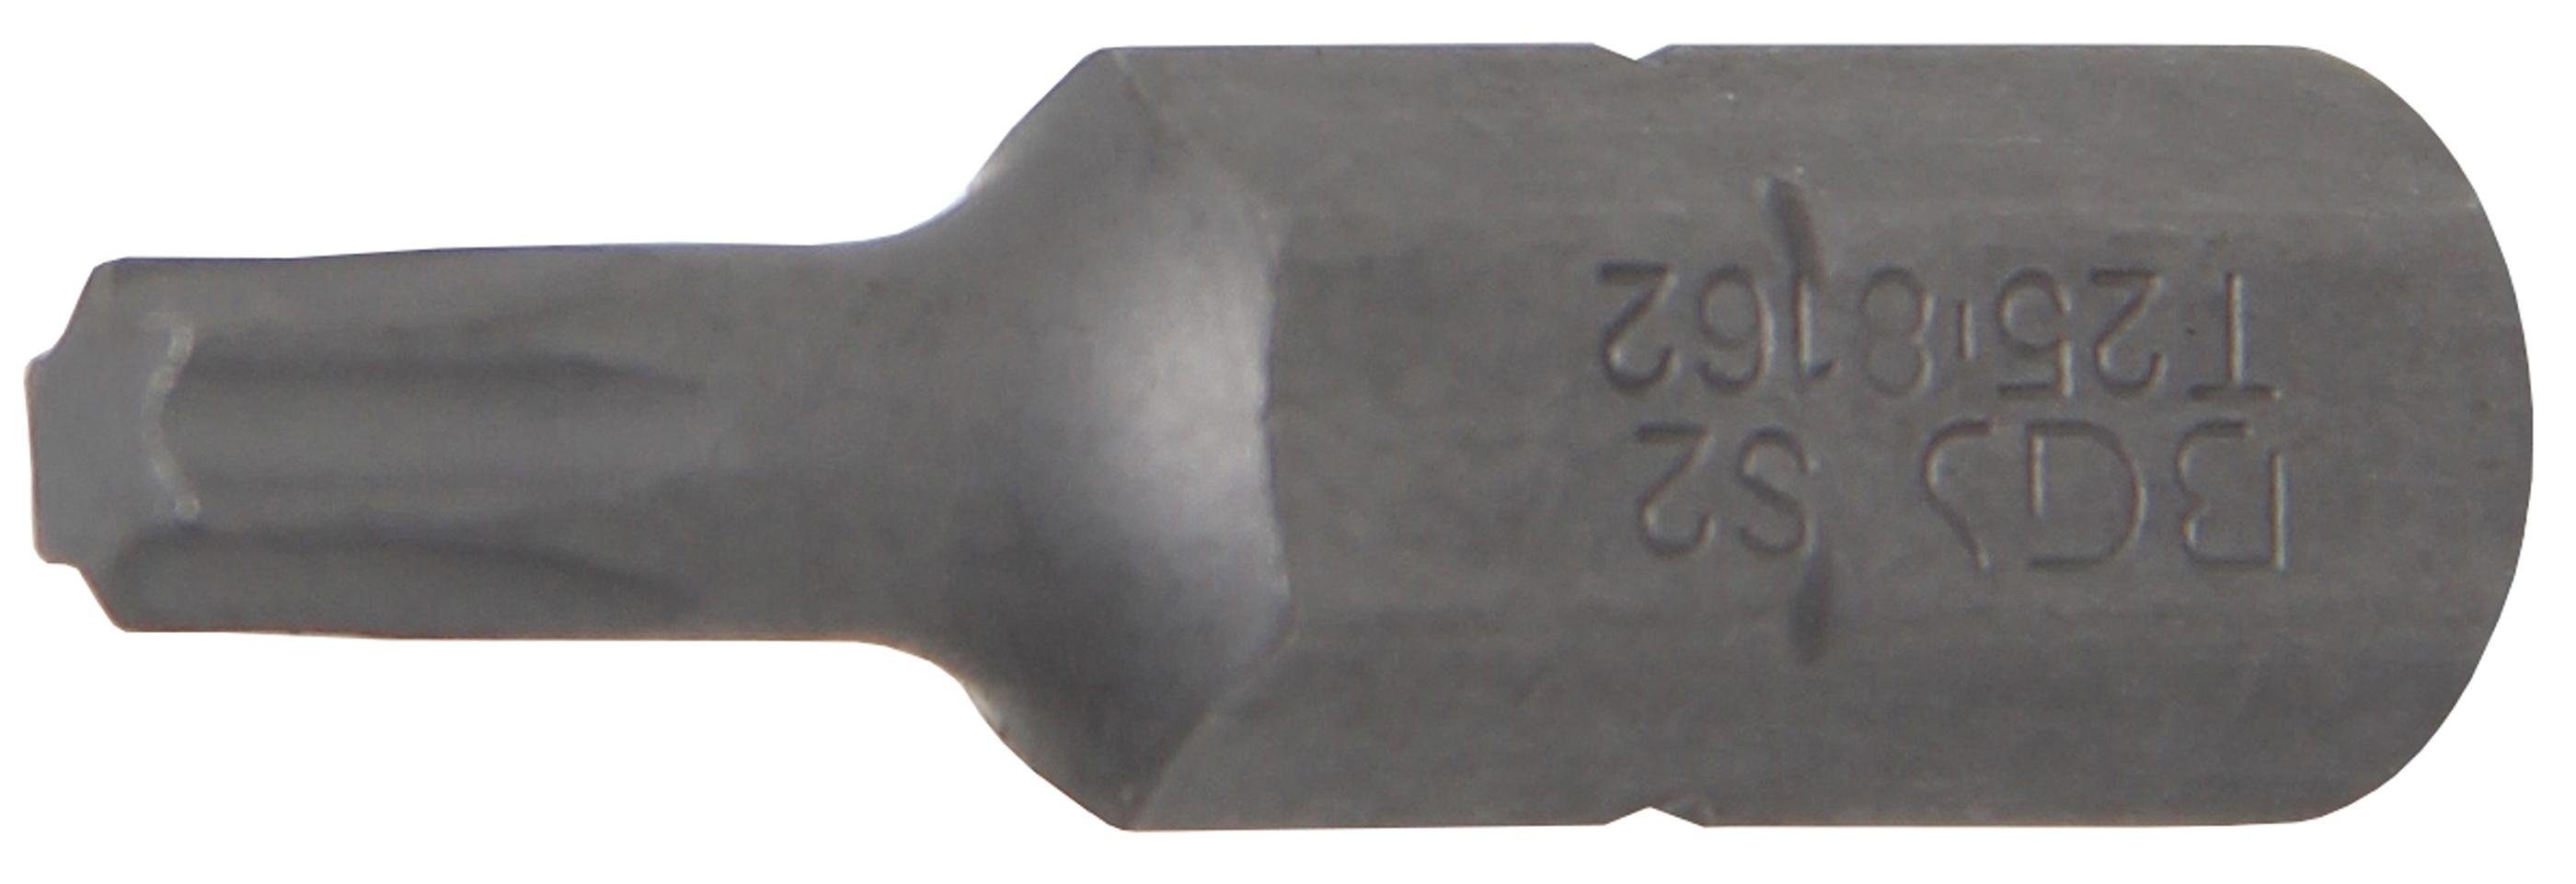 BGS technic Bit-Schraubendreher Bit, Antrieb Außensechskant 8 mm (5/16), T-Profil (für Torx) T25